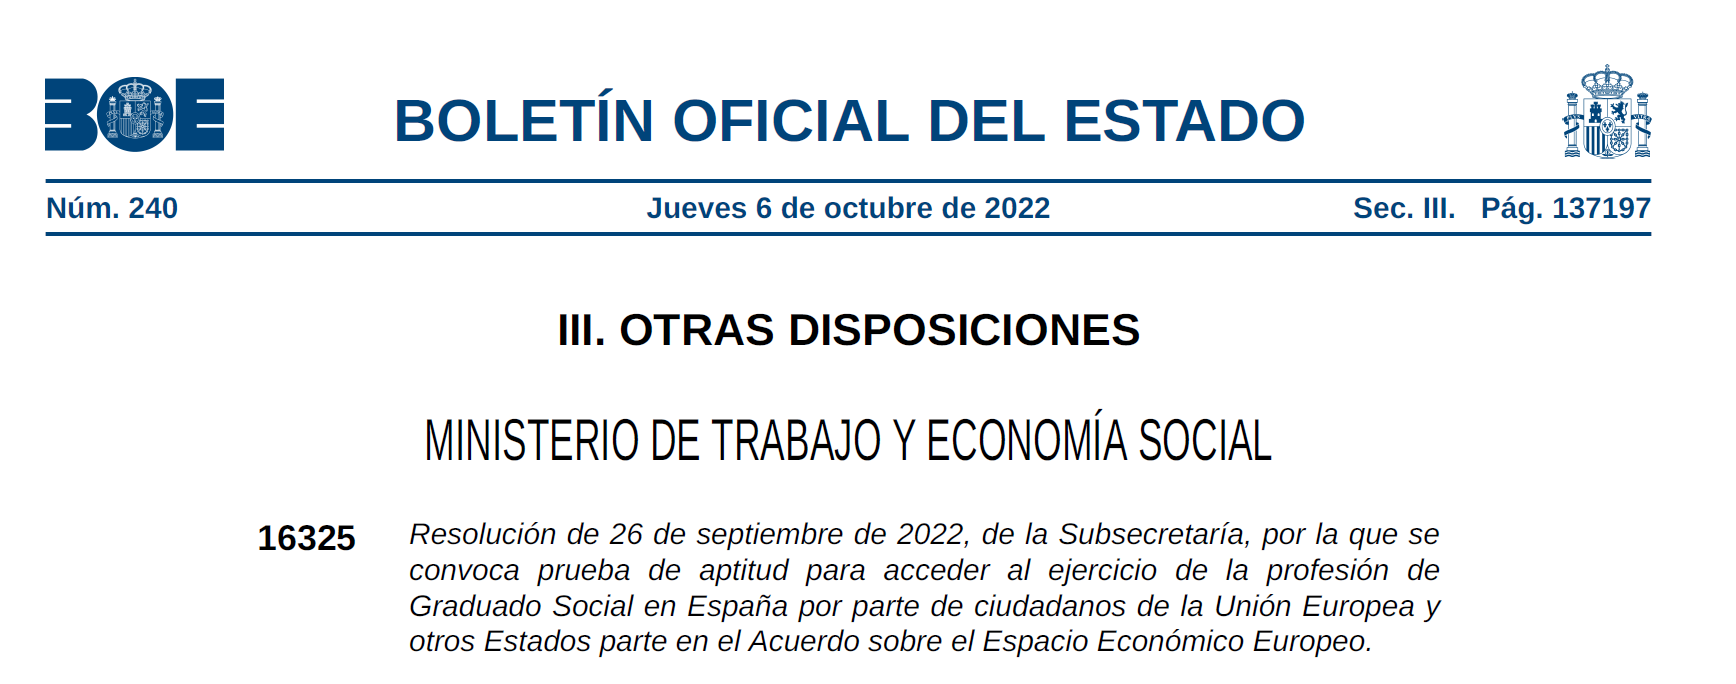 Resolución por la que se convoca prueba de aptitud para acceder al ejercicio de la profesión de Graduado Social en España por parte de ciudadanos de la Unión Europea y otros Estados parte en el Acuerdo sobre el Espacio Económico Eu